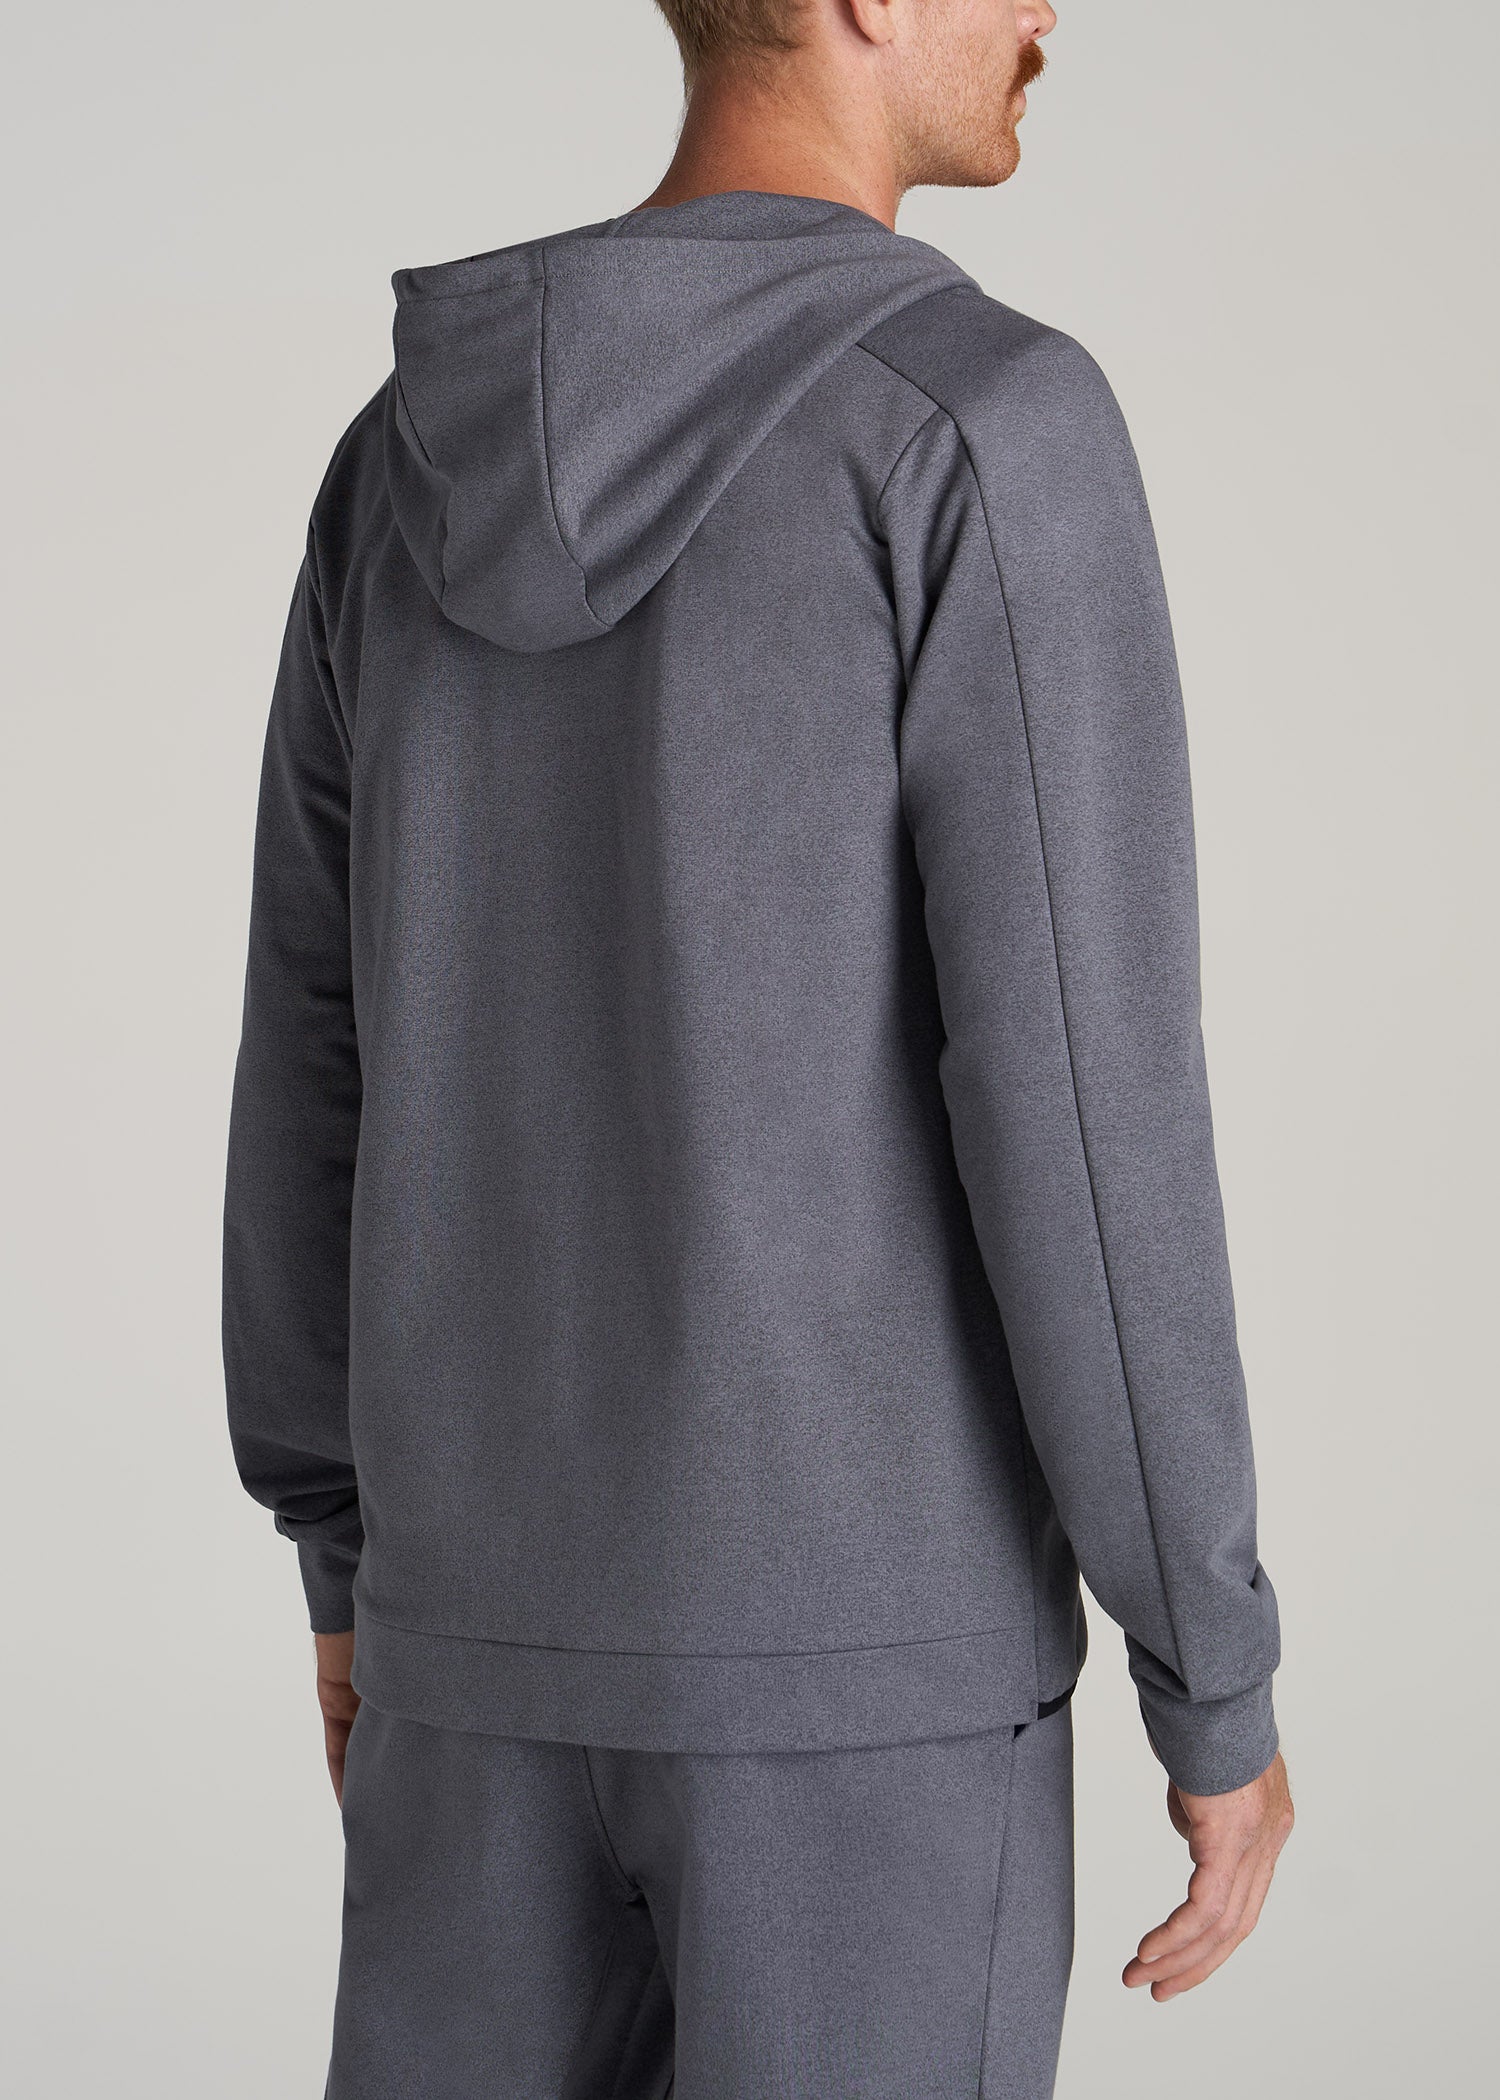 Nike Tall Tech Fleece hoodie in grey